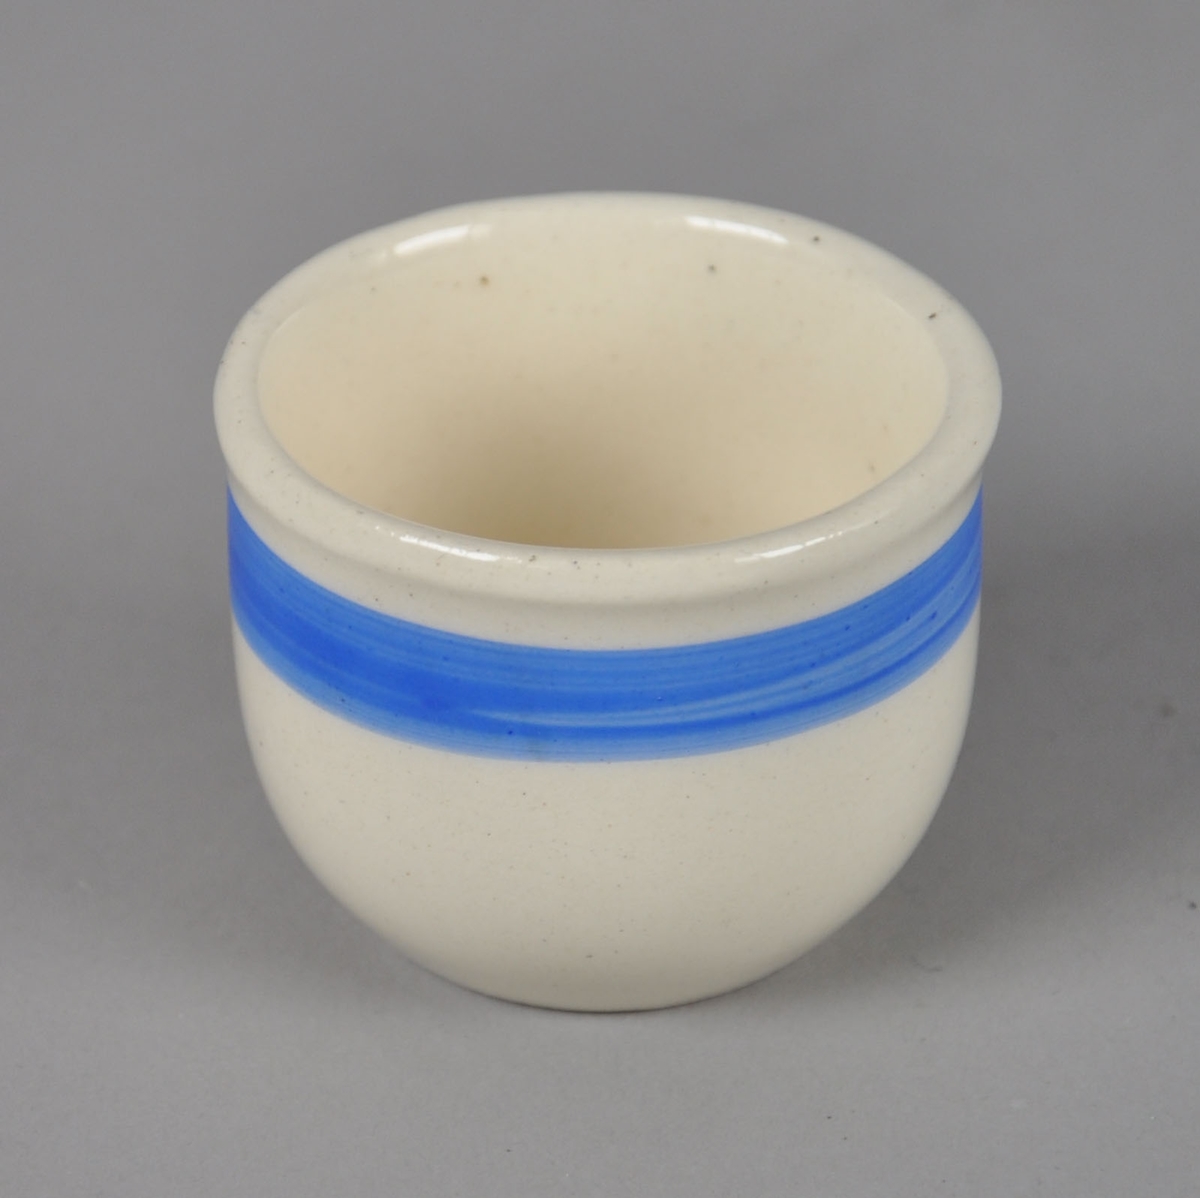 Eggeglass av glassert keramikk, med påmalt blå stripe ved kanten.